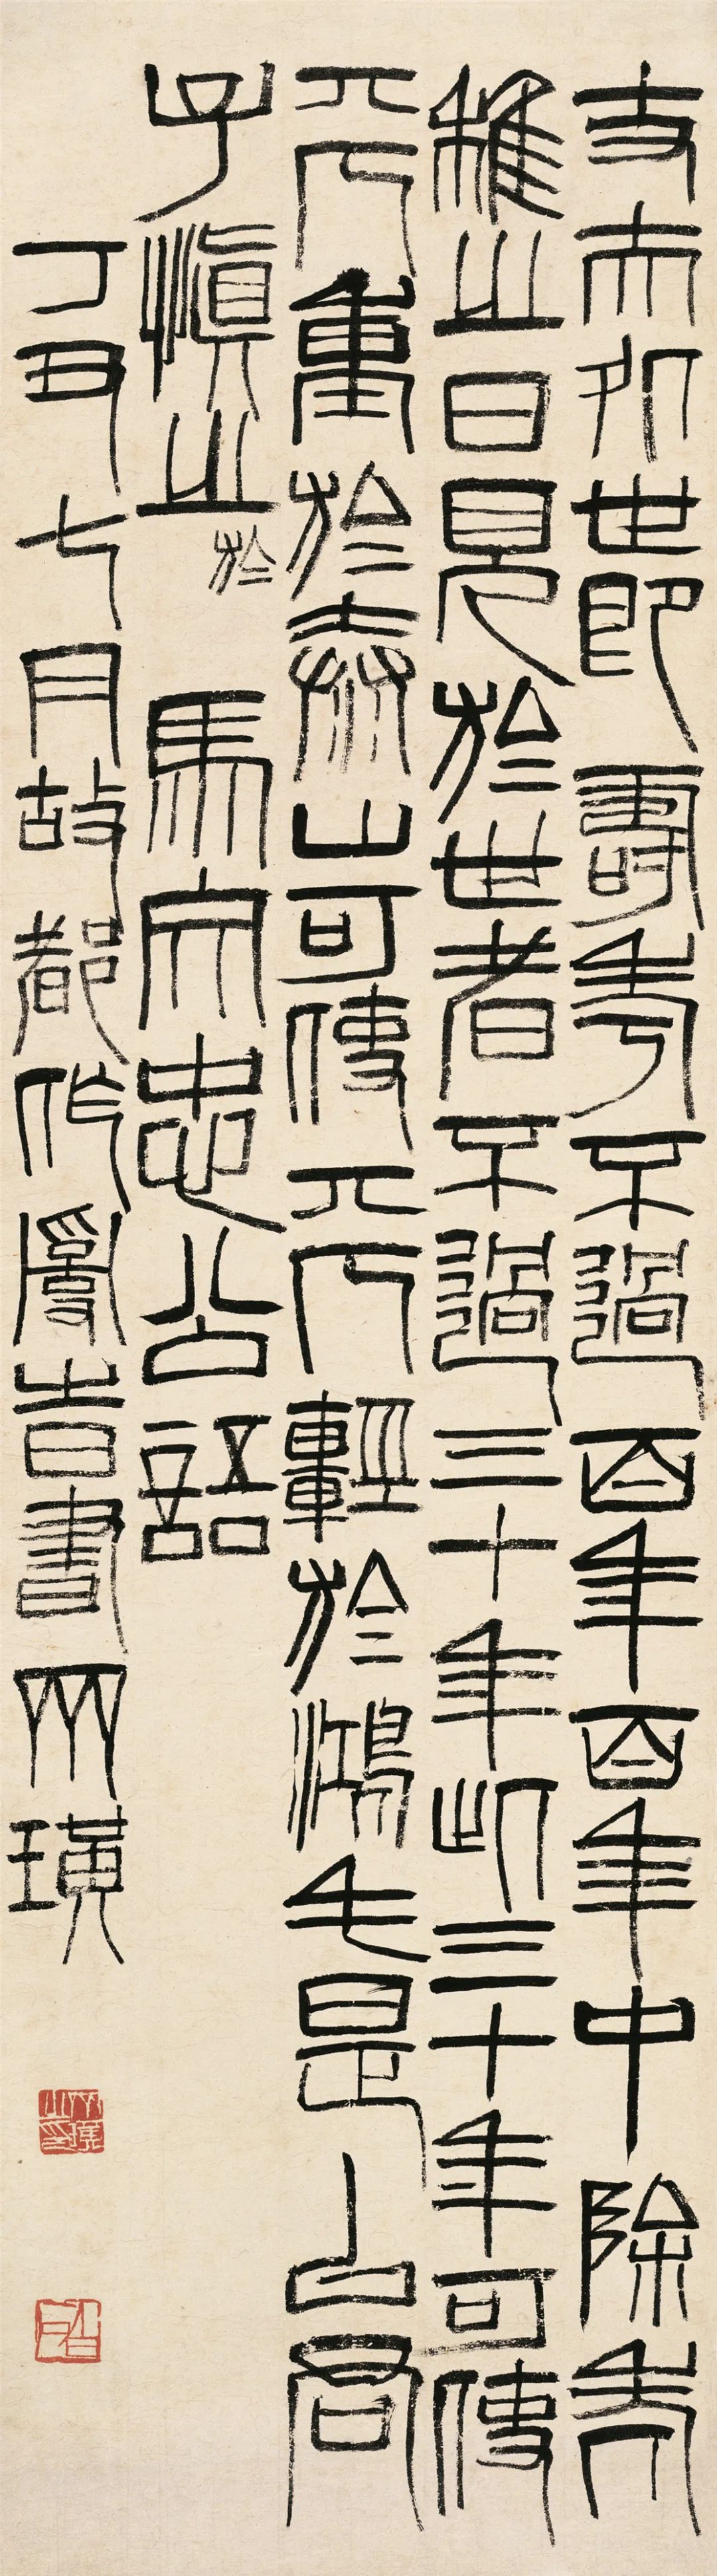 篆书马文忠公语 齐白石 135cm×37.5cm 纸本墨笔 1937年